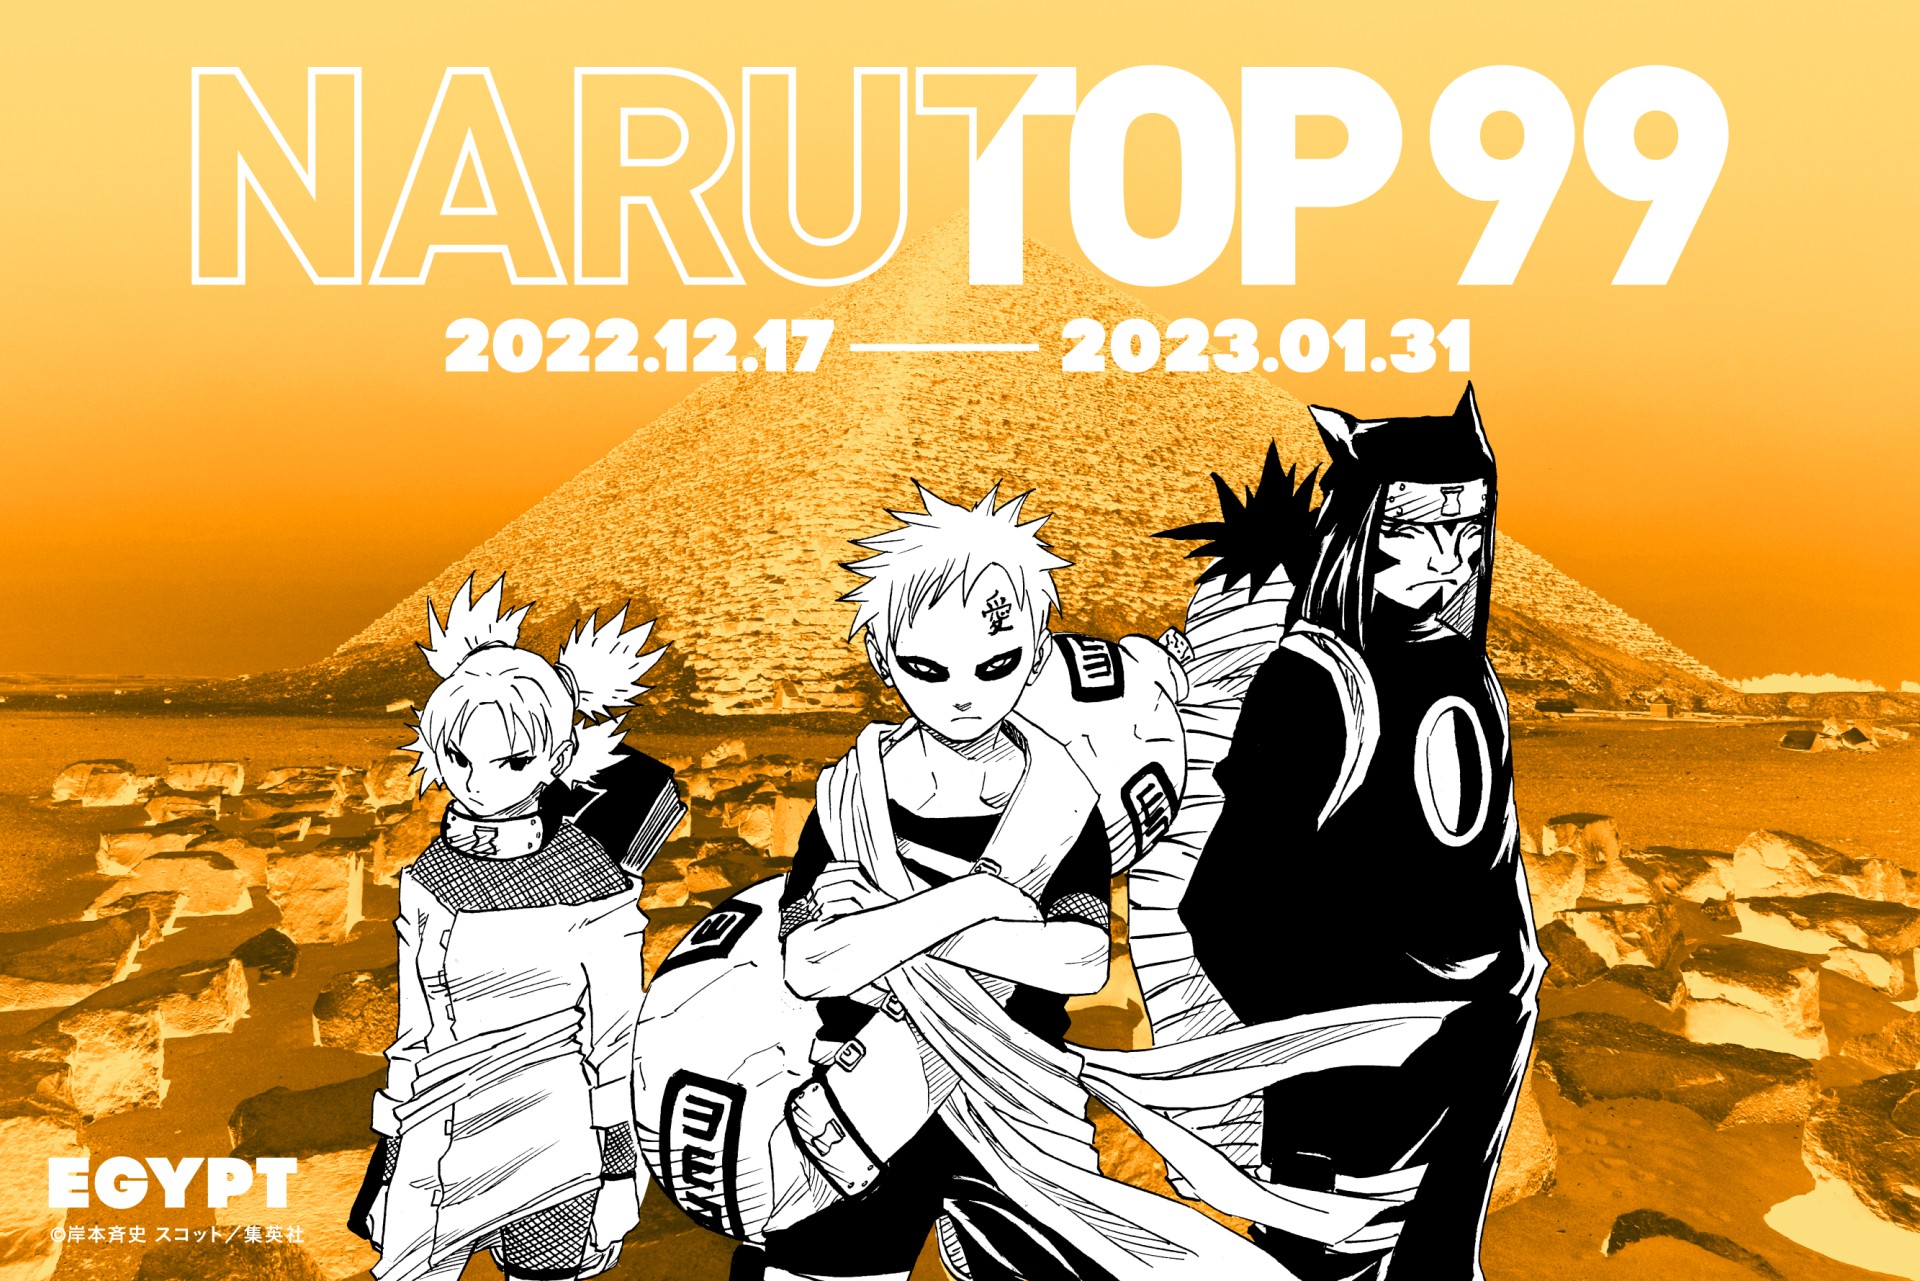 Naruto Narutop99 Top Characters Gathering Sp Big Poster